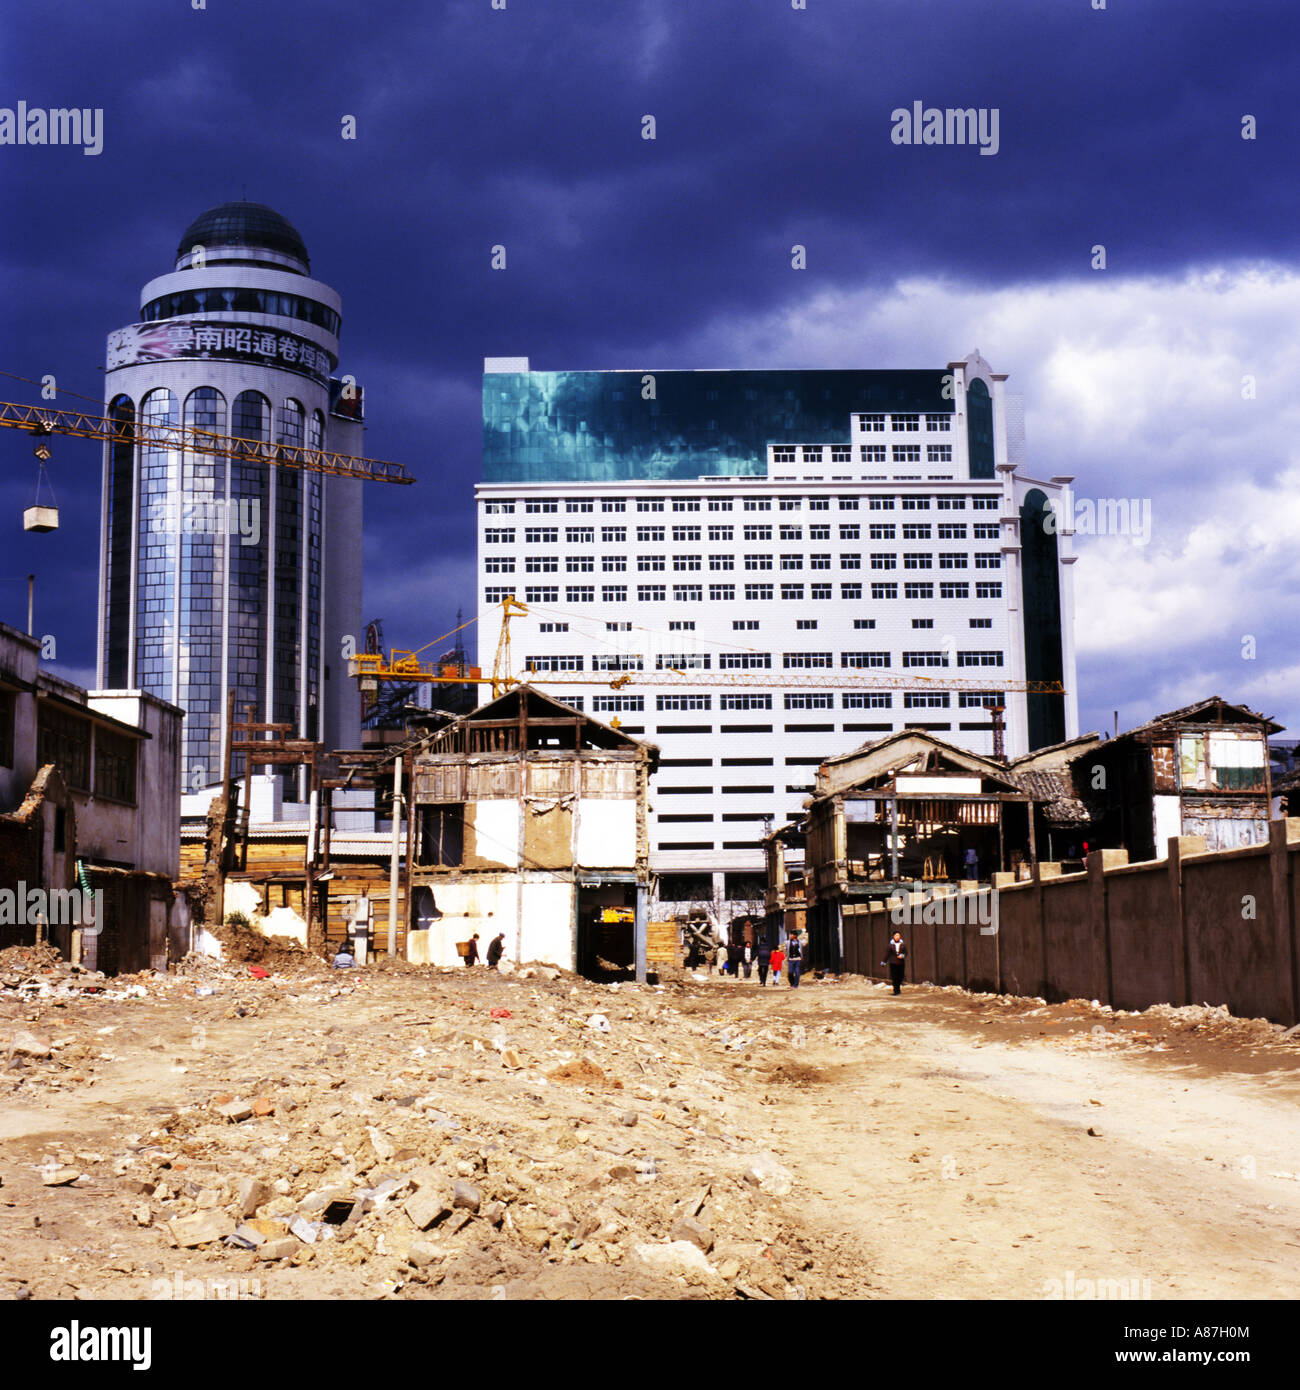 De nouveaux bâtiments d'affaires moderne,se lever sur les ruines de démoli des maisons traditionnelles sous un ciel d'orage,Kunming, Chine Banque D'Images